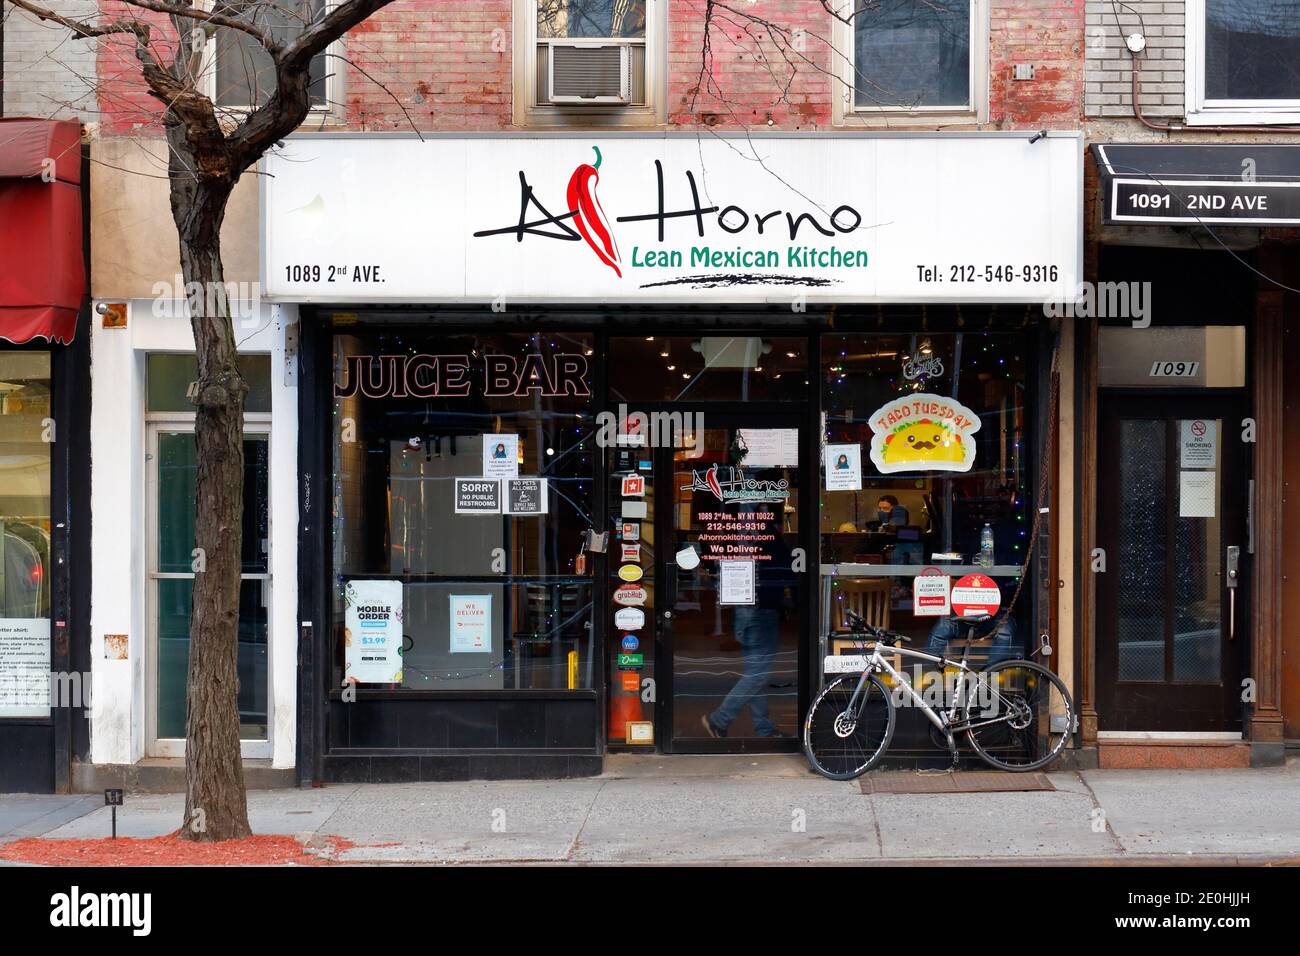 Al Horno Lean Mexican Kitchen, 1089 2nd Ave, Nueva York, Nueva York, Nueva York, foto del escaparate de una cadena de restaurantes mexicanos en Manhattan. Foto de stock